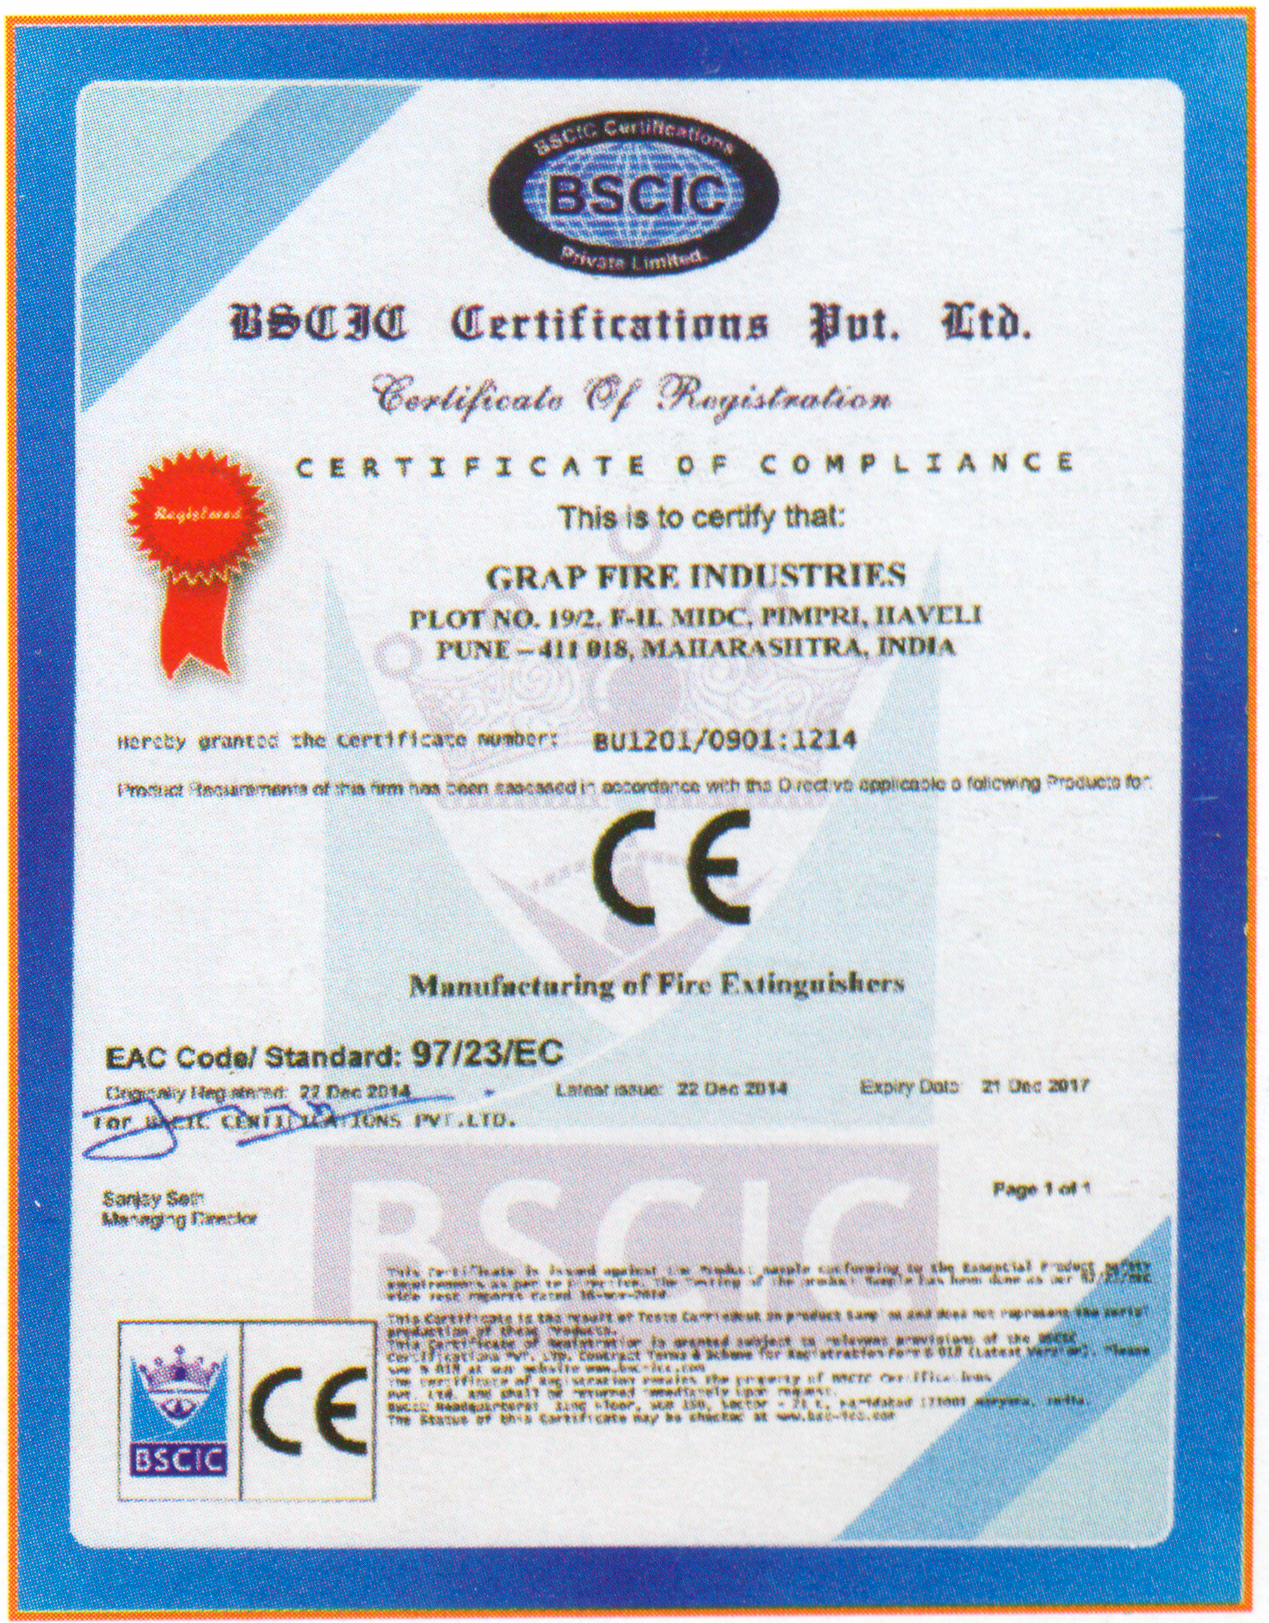 ce-certification